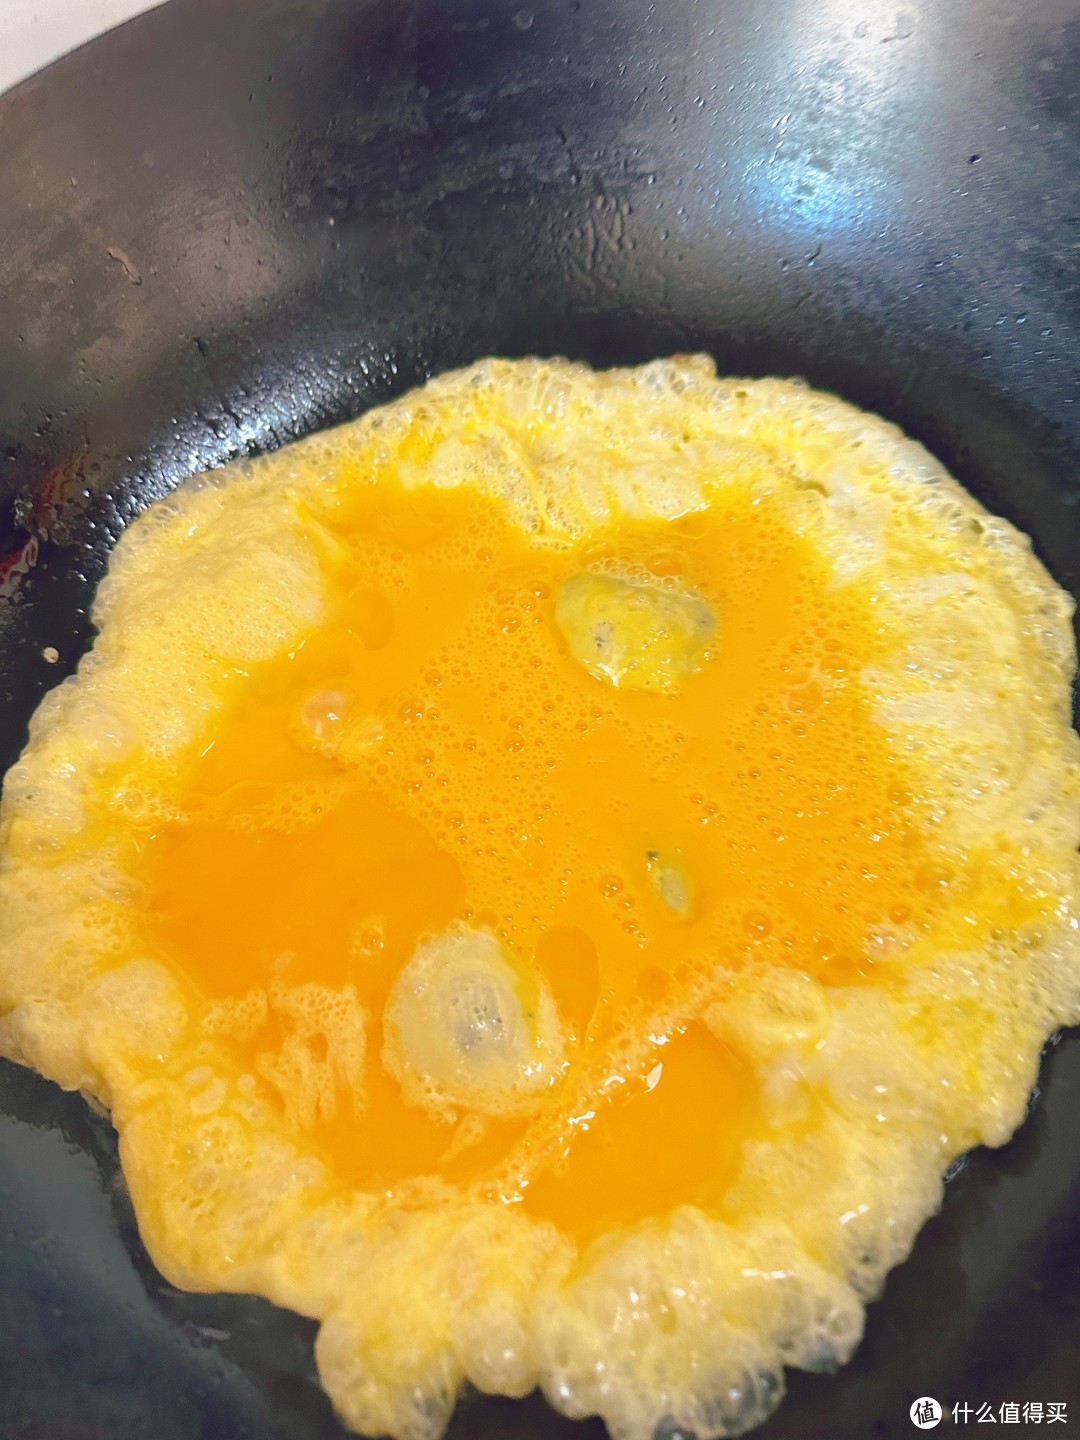 用小母鸡下的🥚做的一个家常版蛋炒饭。